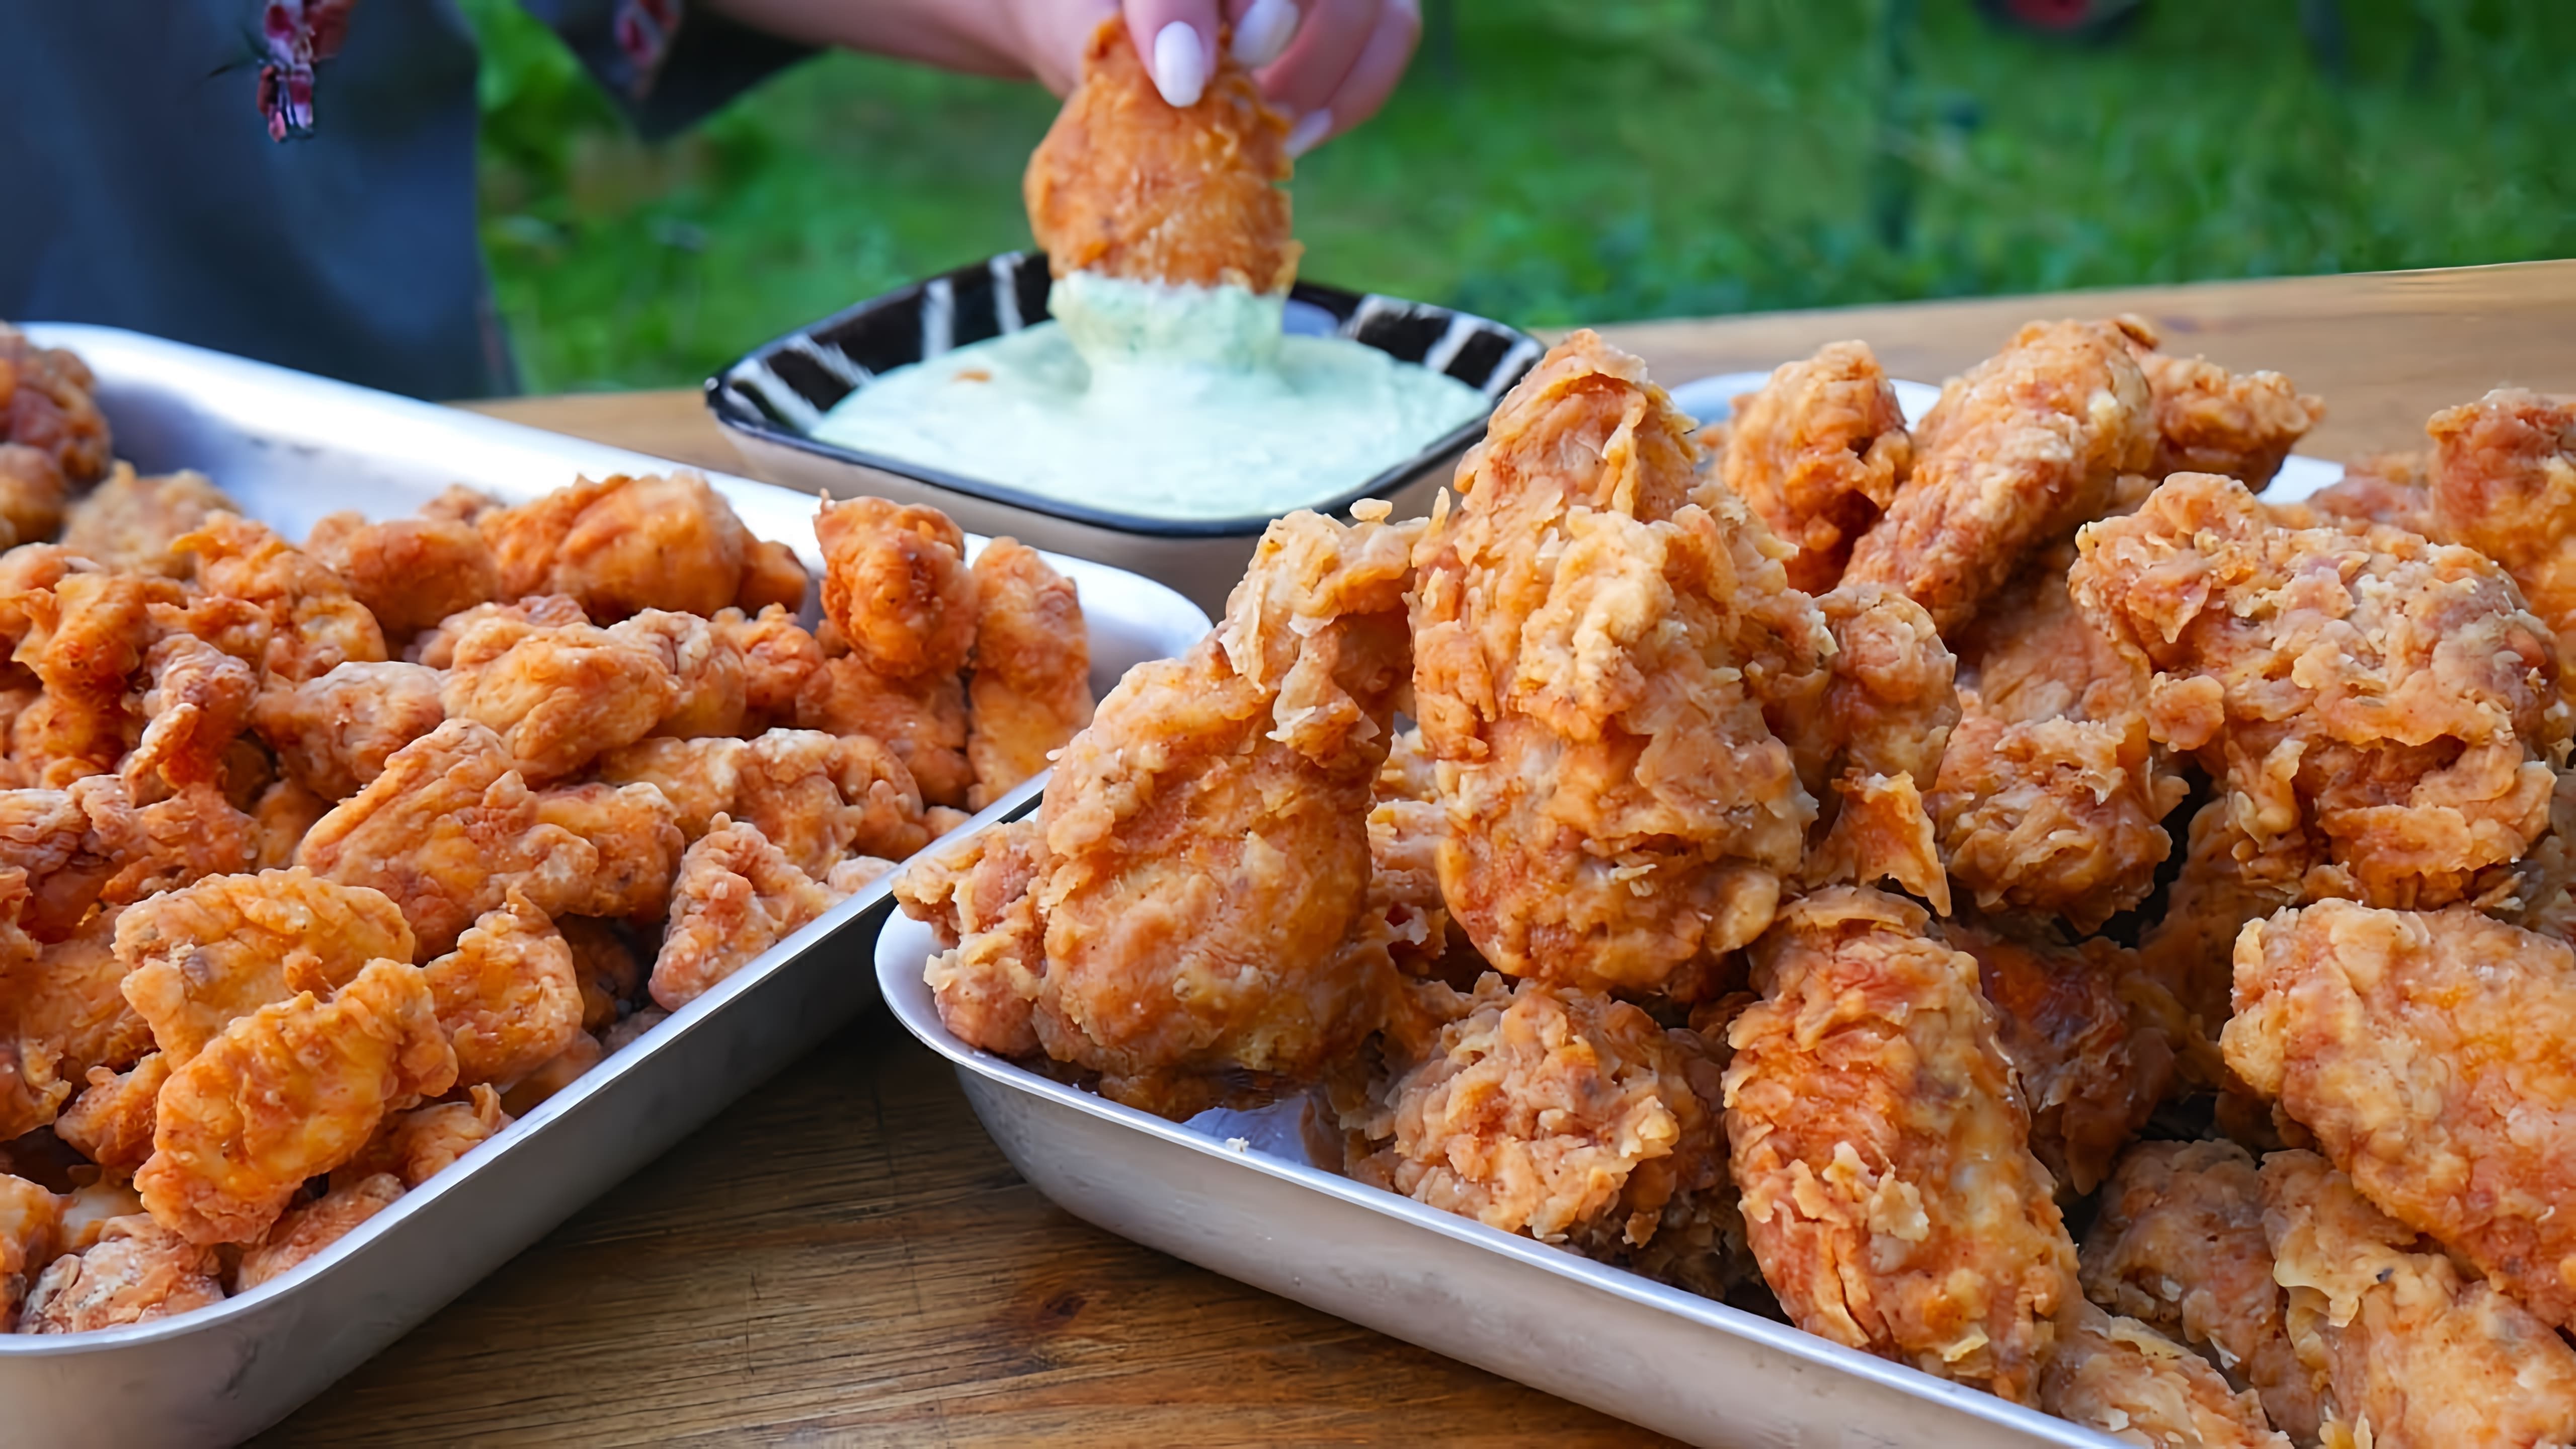 В этом видео демонстрируется рецепт приготовления куриных крылышек и куриного попкорна в стиле KFC